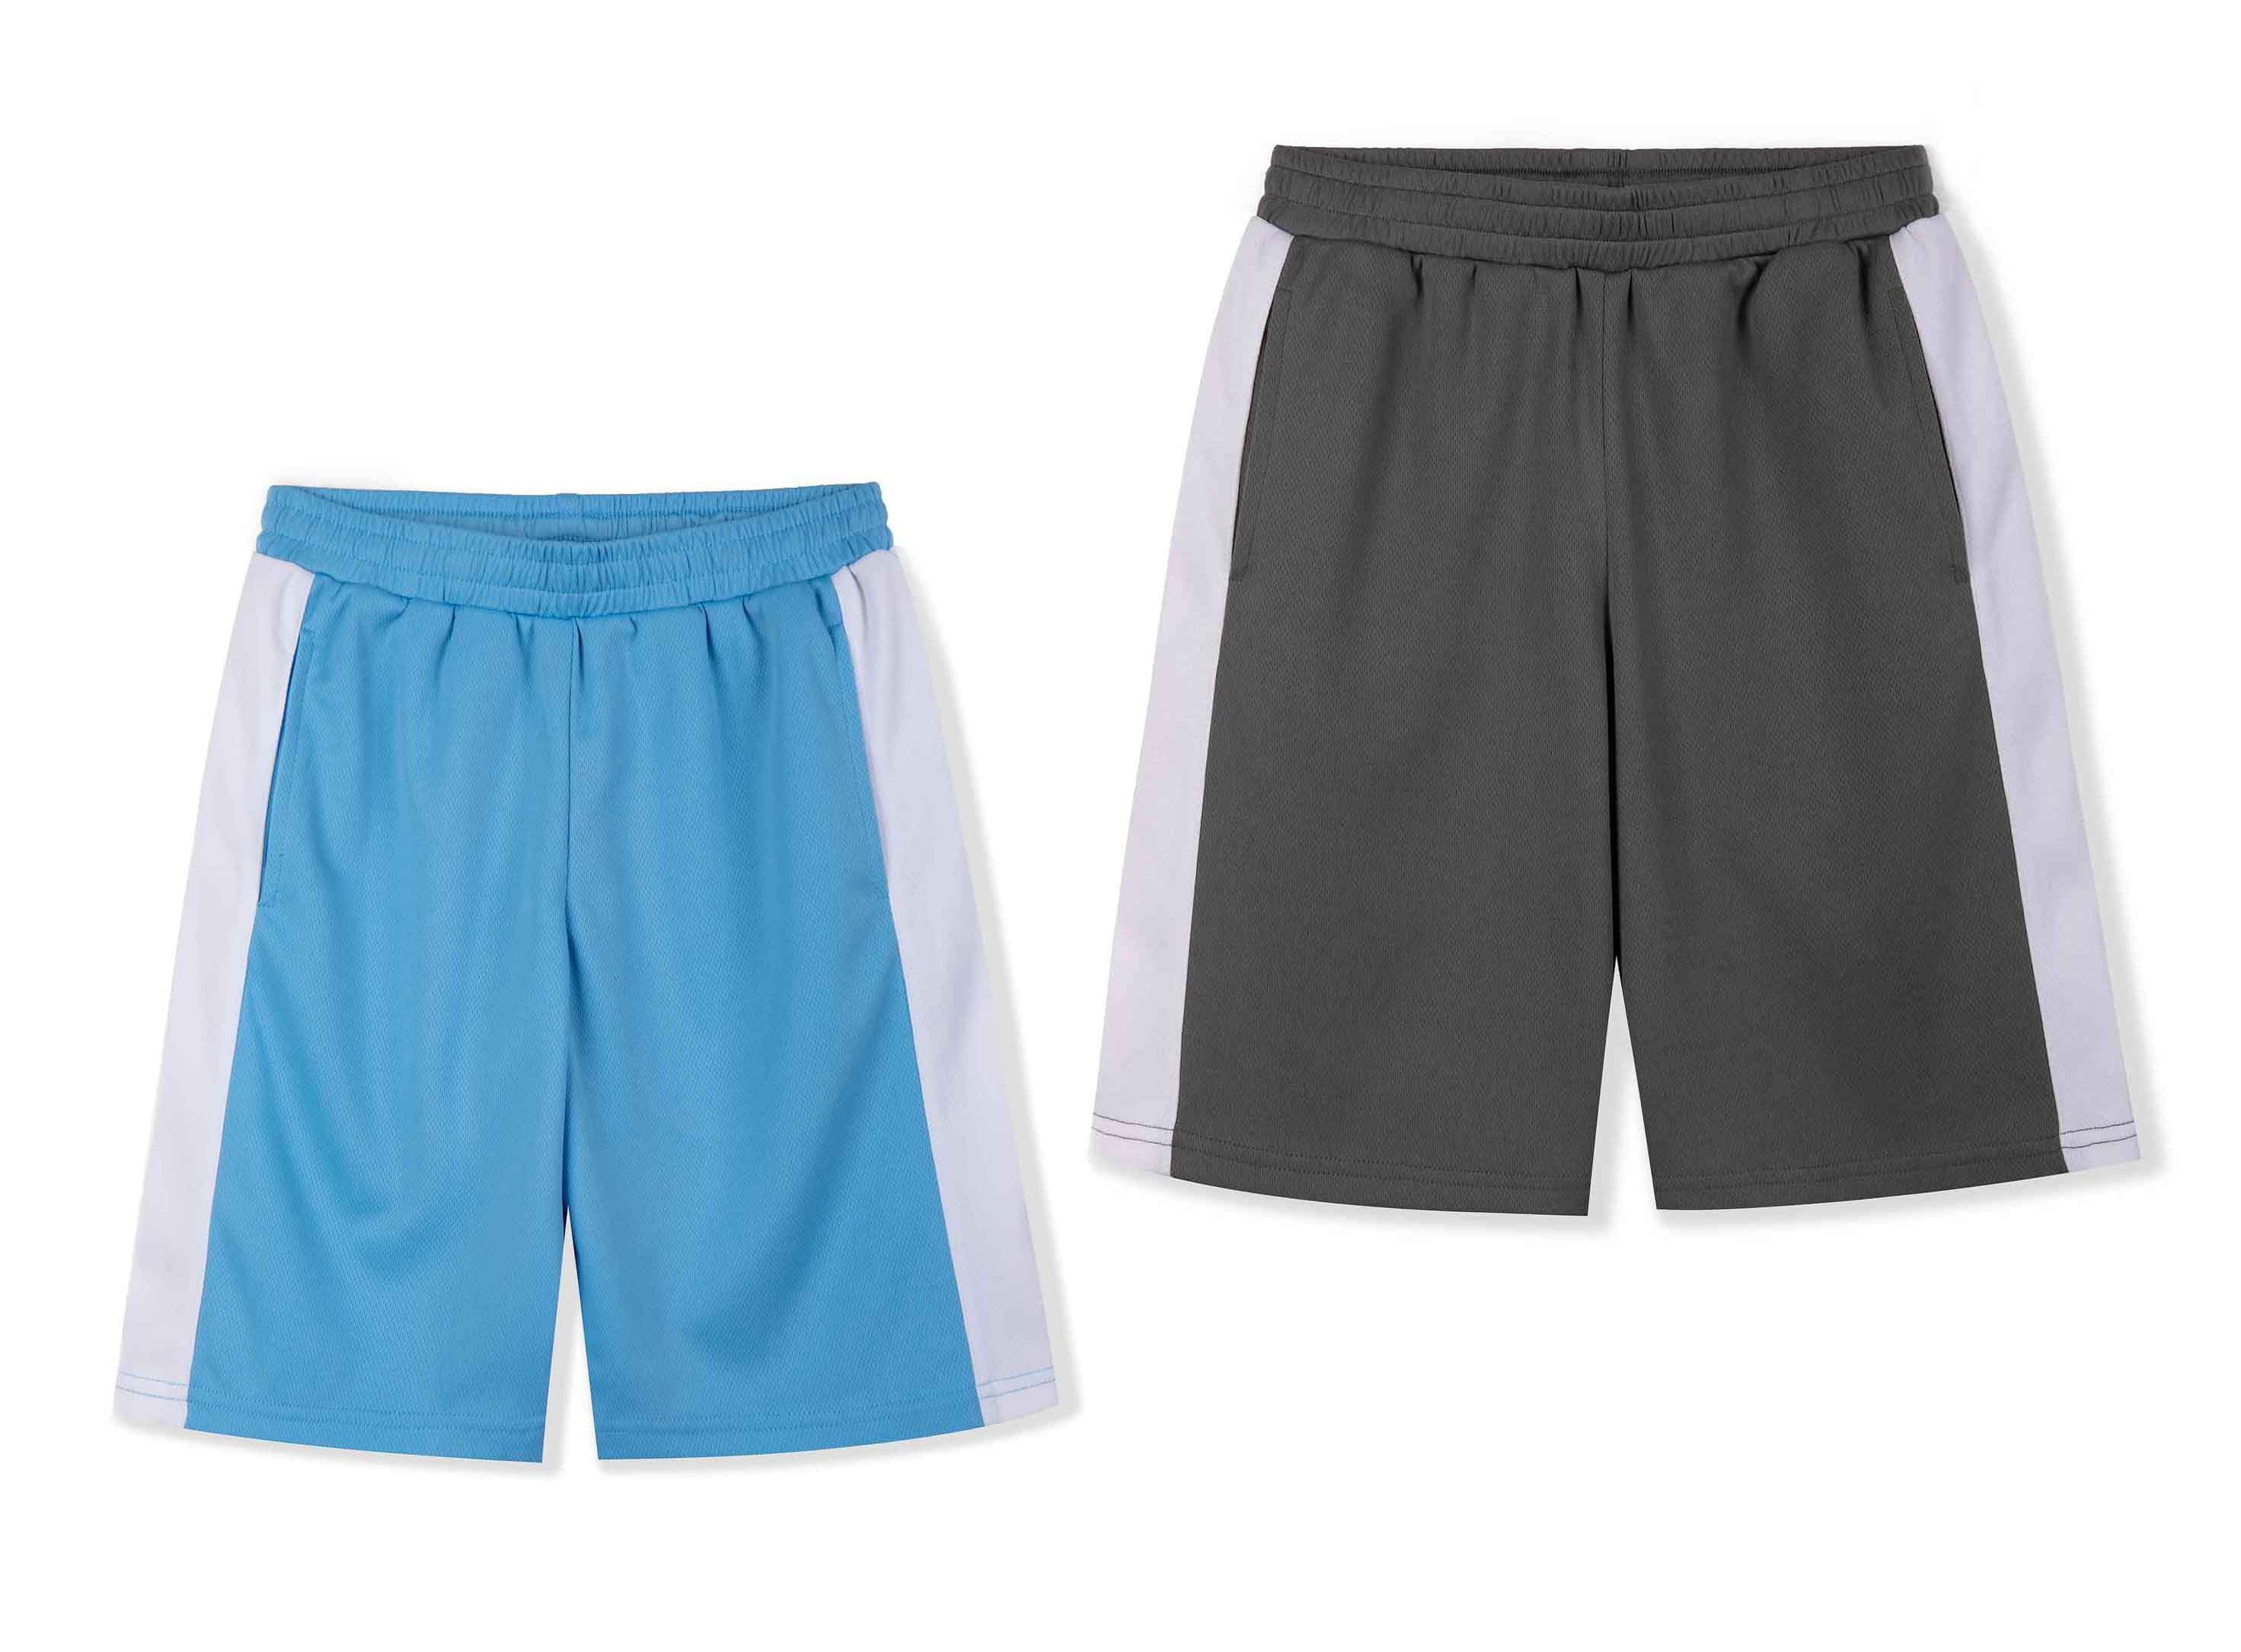 Uhlsport Sports Football Soccer Training Kids Basic Shorts Without Slip Navy 